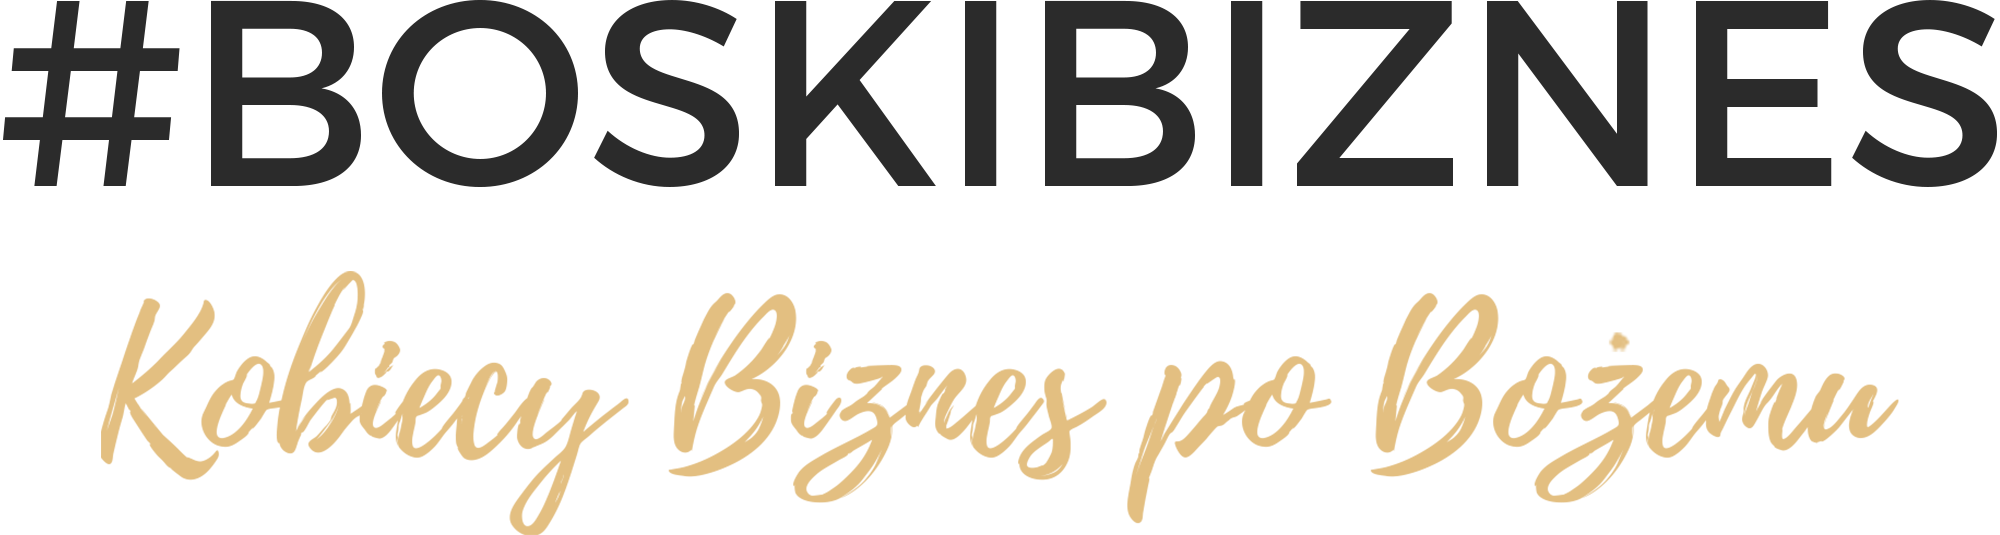 logo-bb-kobiecy